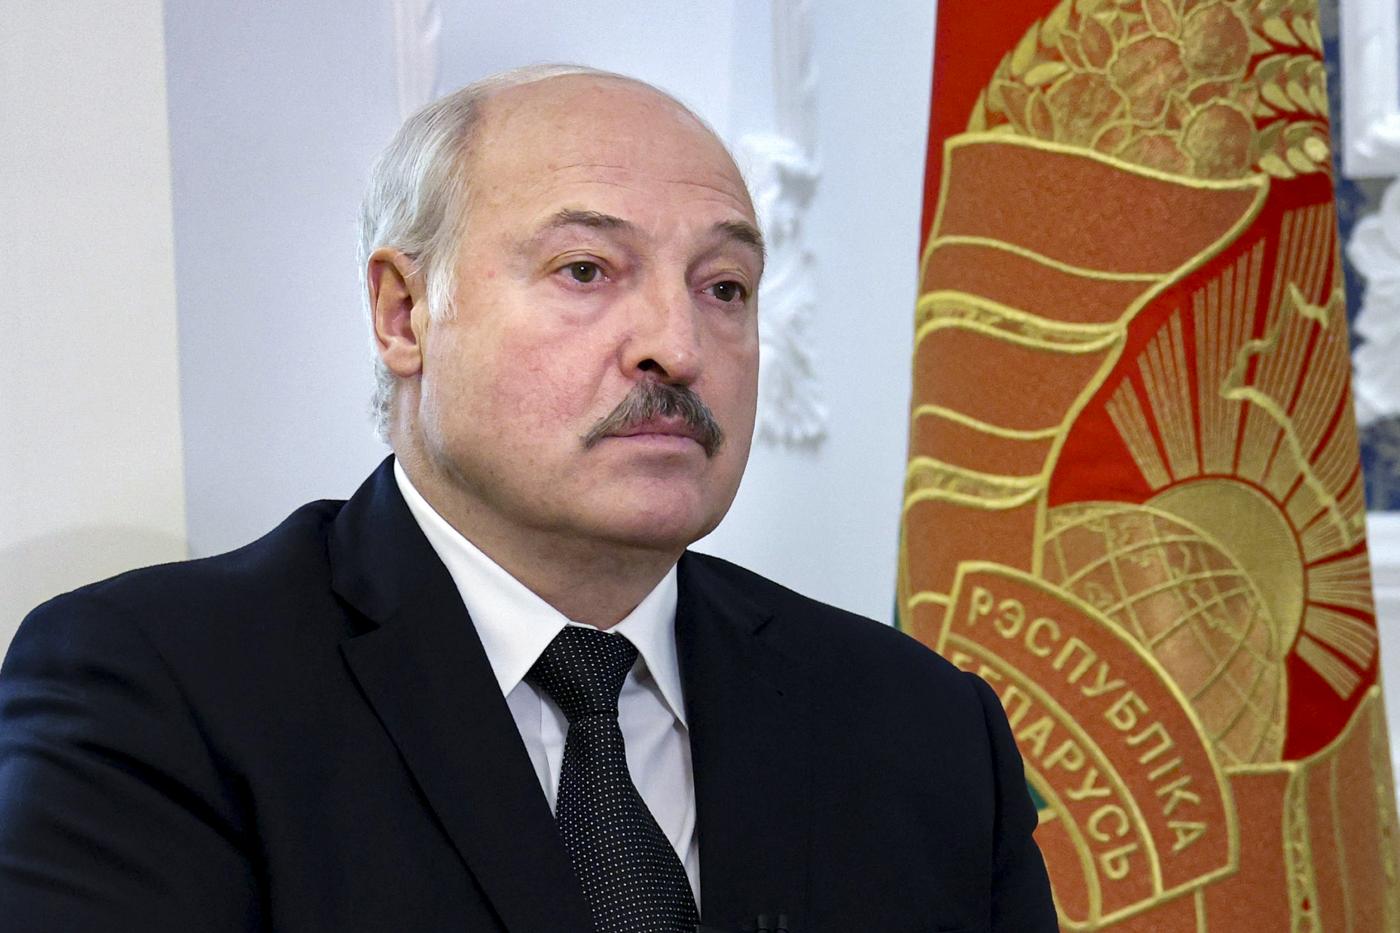 Lukashenko allude al nucleare: "L'arma con cui Mosca vincerà? Dipende dalla Nato..."